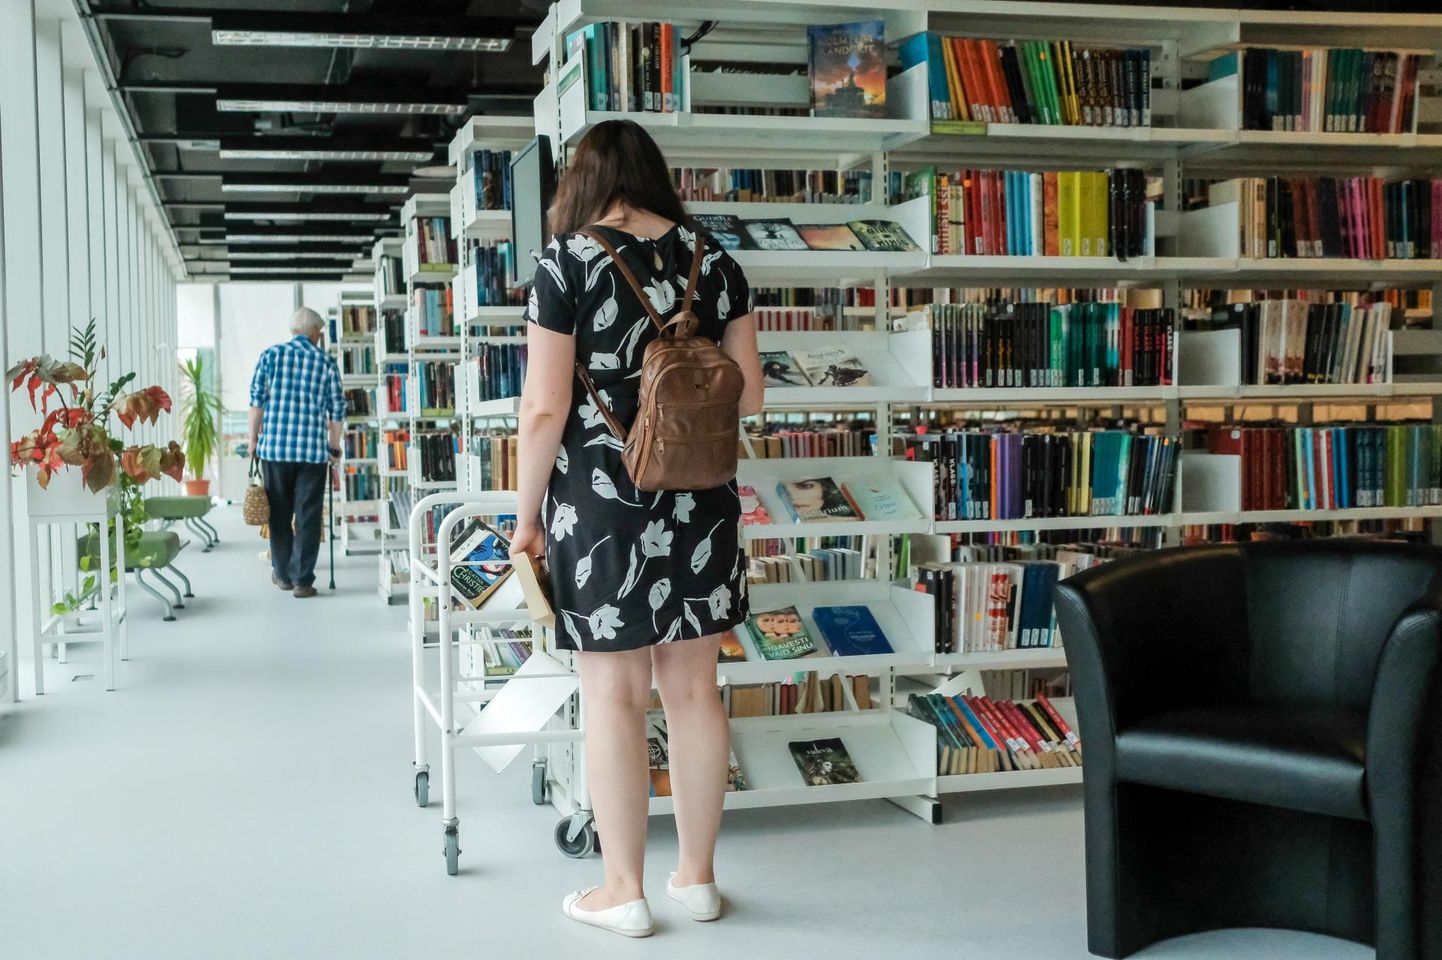 Raamatukogude säilitamiseks on kõige lihtsam samm registreeruda lugejaks ning hakata laenutama.